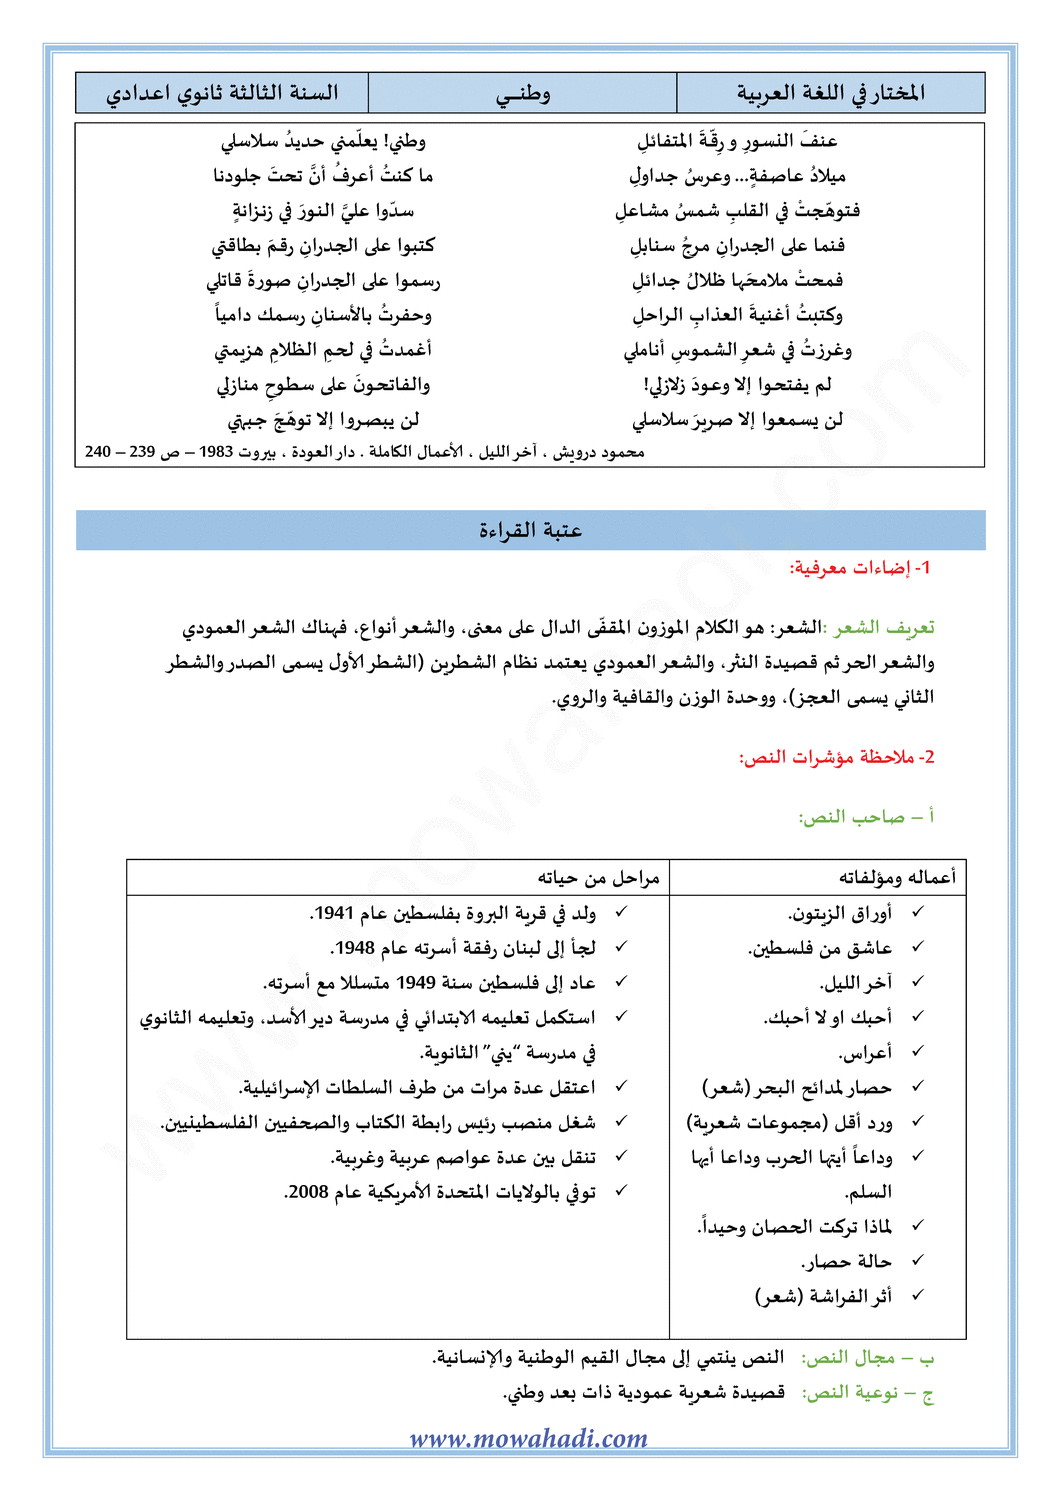 تحضير النص القرائي  وطني  للسنة الثالثة اعدادي في مادة اللغة العربية